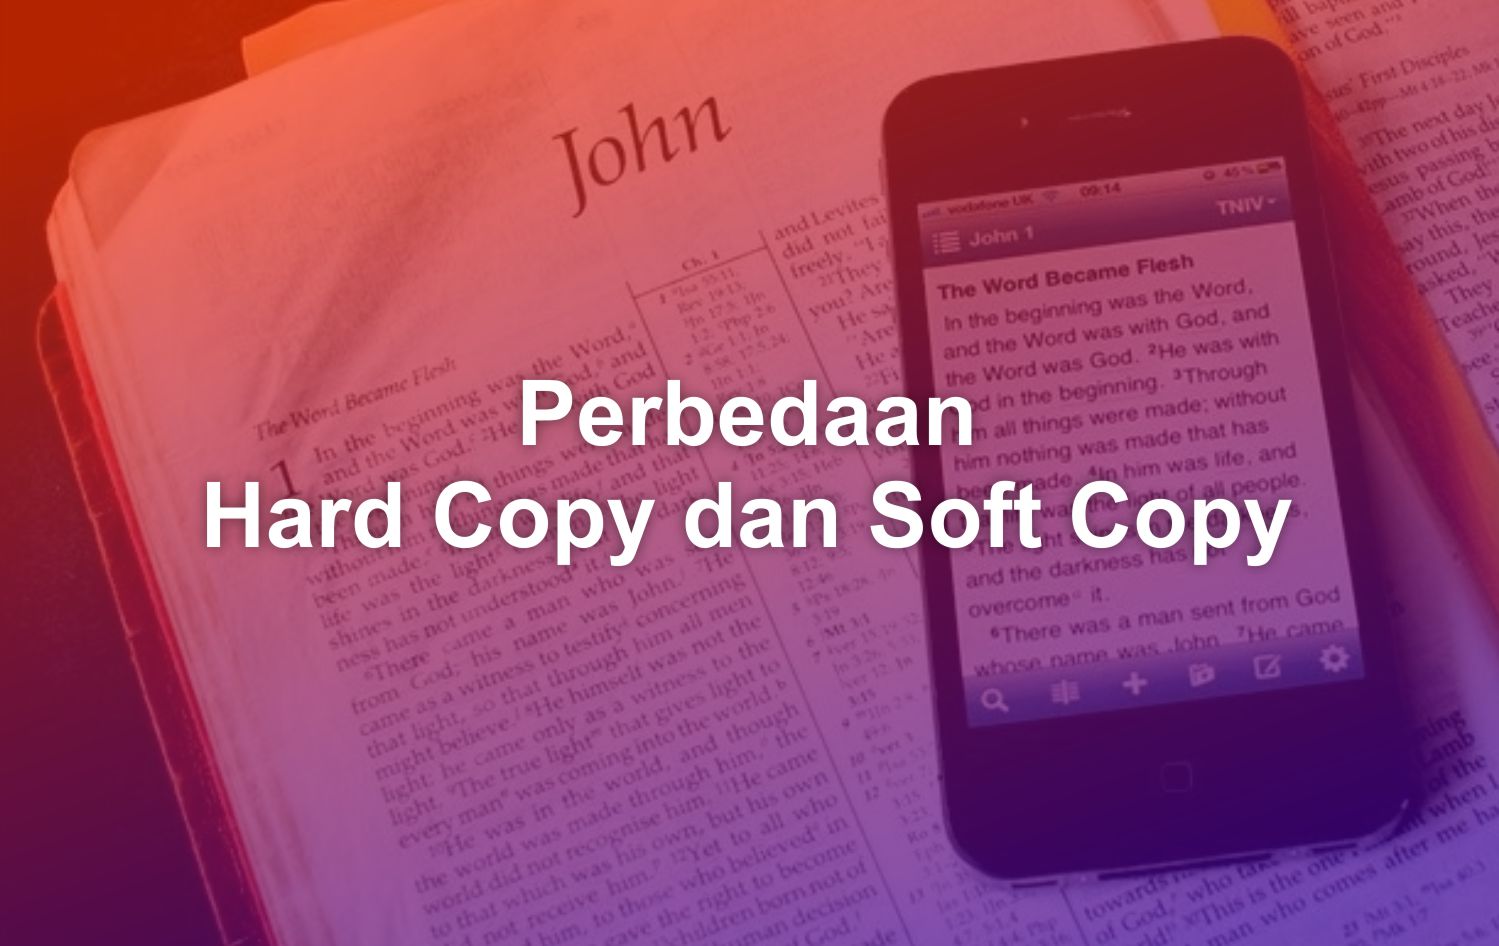 Perbedaan antara hard copy dan soft copy